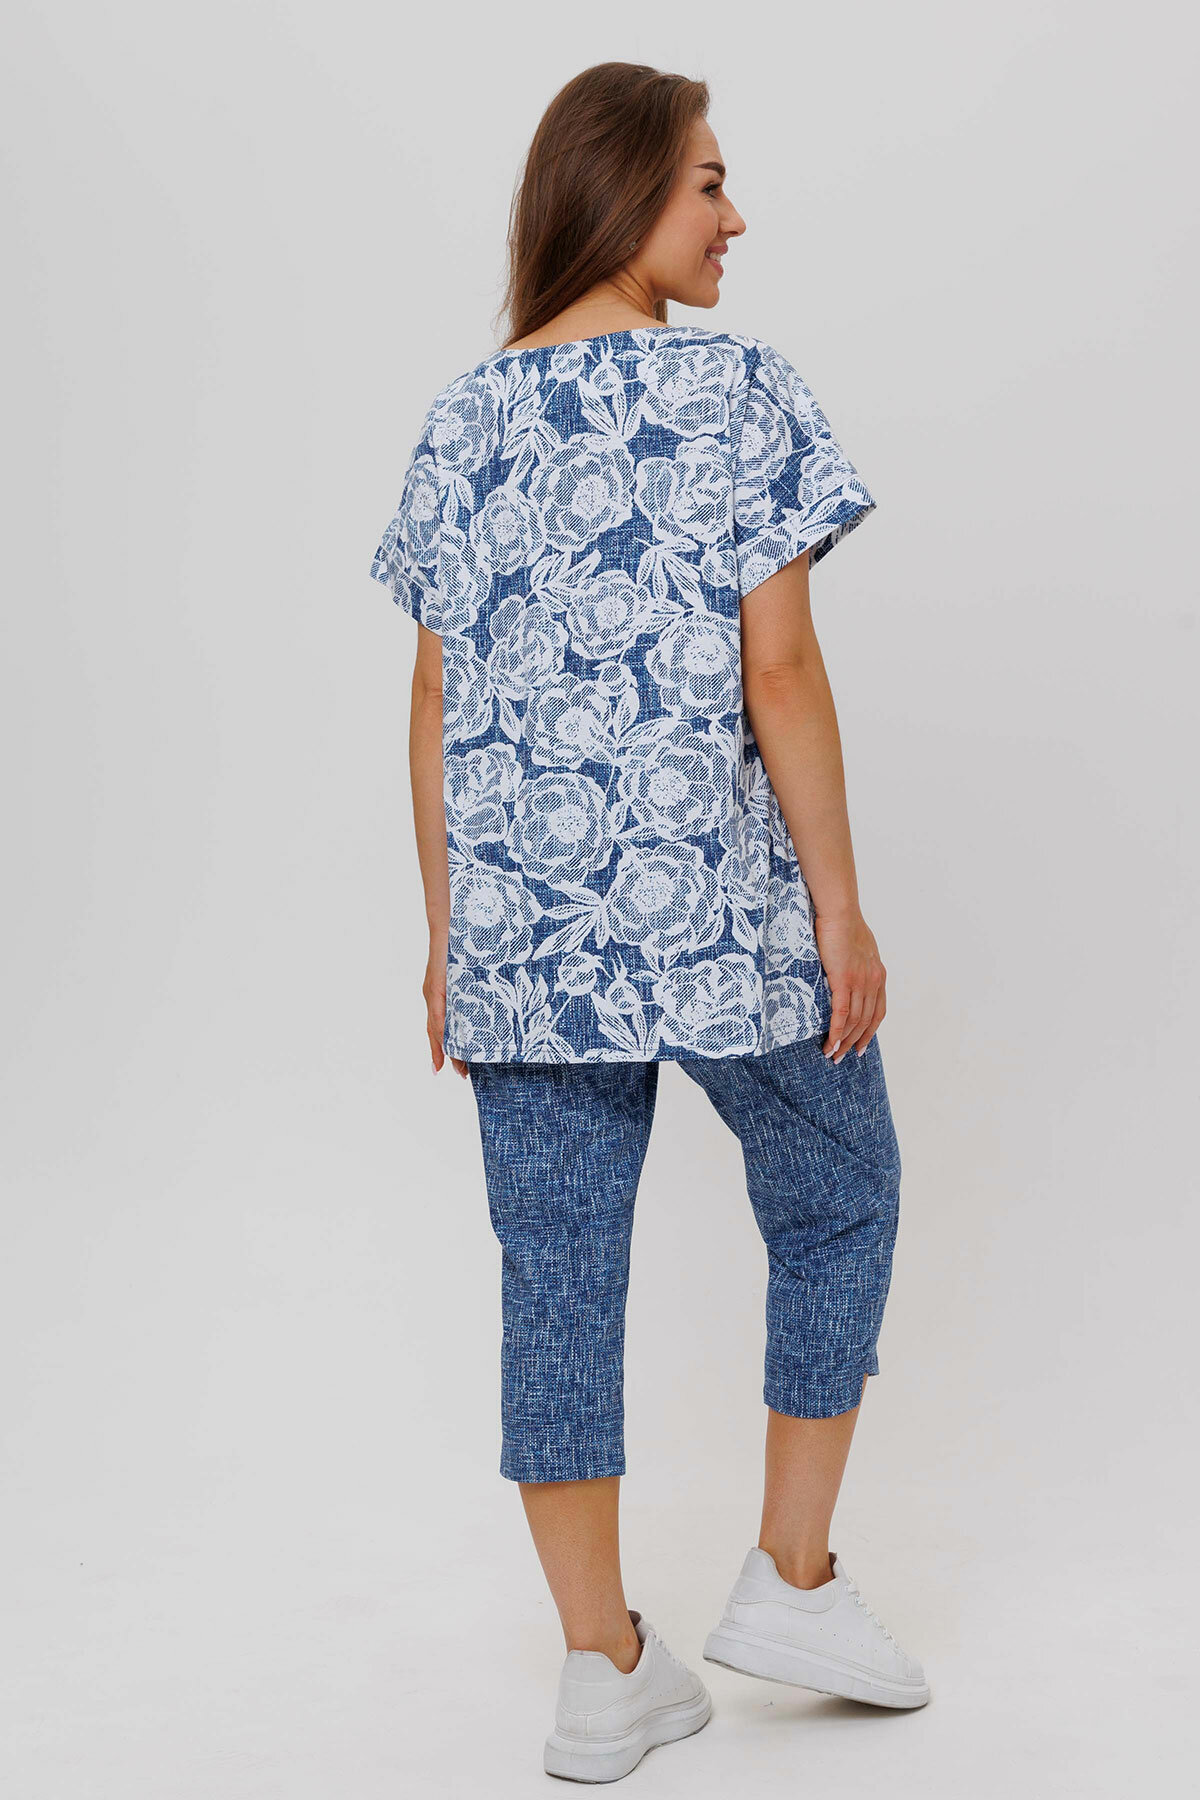 Комплект Modellini, футболка, бриджи, короткий рукав, размер 58, синий - фотография № 16